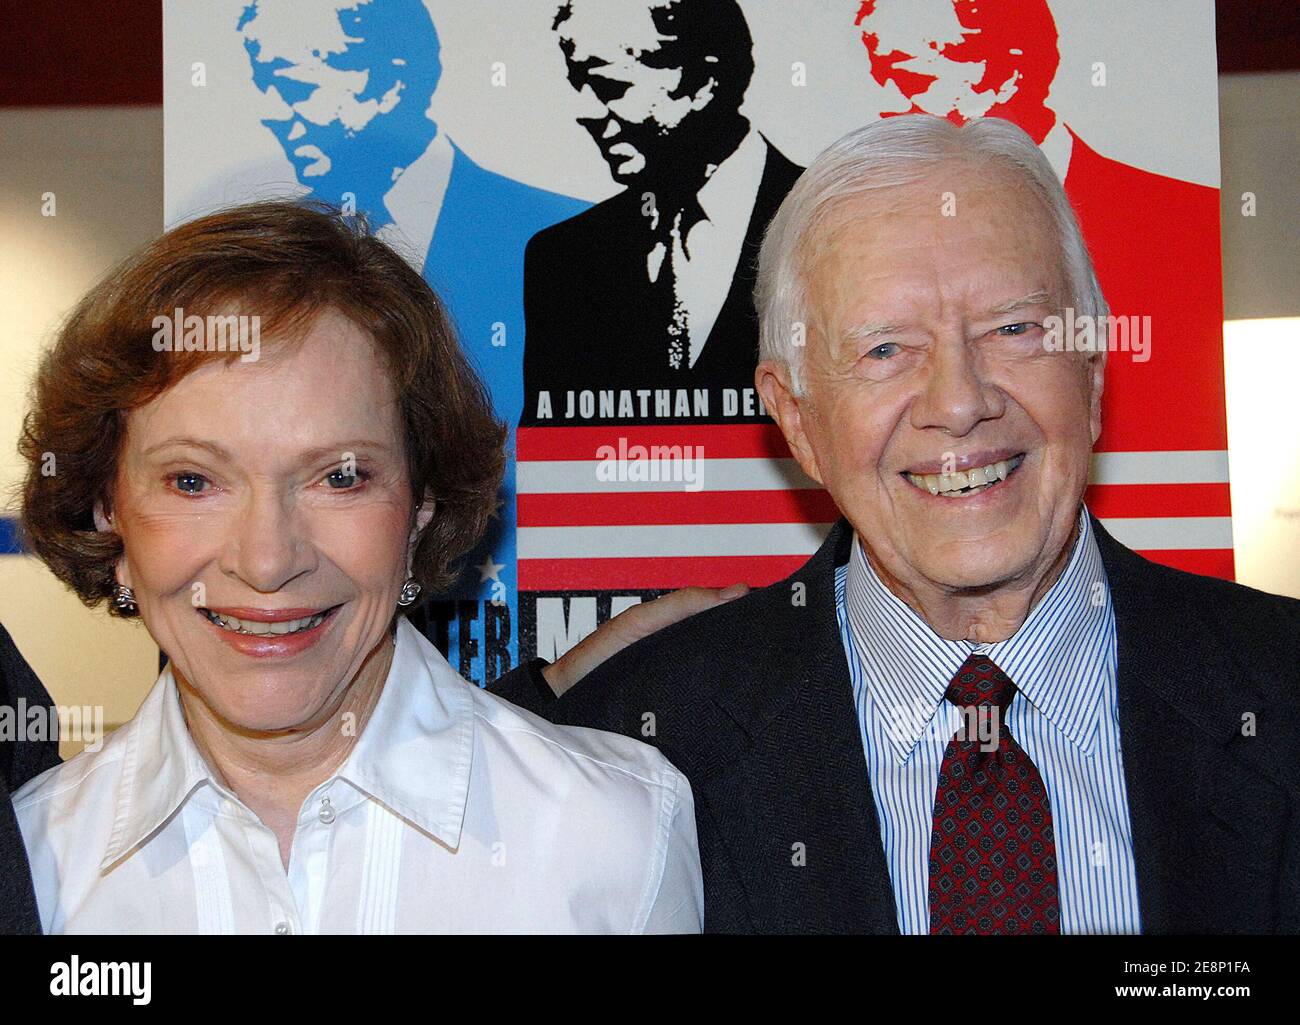 Der ehemalige US-Präsident Jimmy Carter und die ehemalige First Lady/Ehefrau Rosalyn Carter kommen bei der Premiere von "man from Plains" während des Toronto International Film Festival 2007 an, das am 10. September 2007 im Ryerson Theatre in Toronto, Kanada, stattfand. Foto von Olivier Douliery/ABACAPRESS.COM Stockfoto